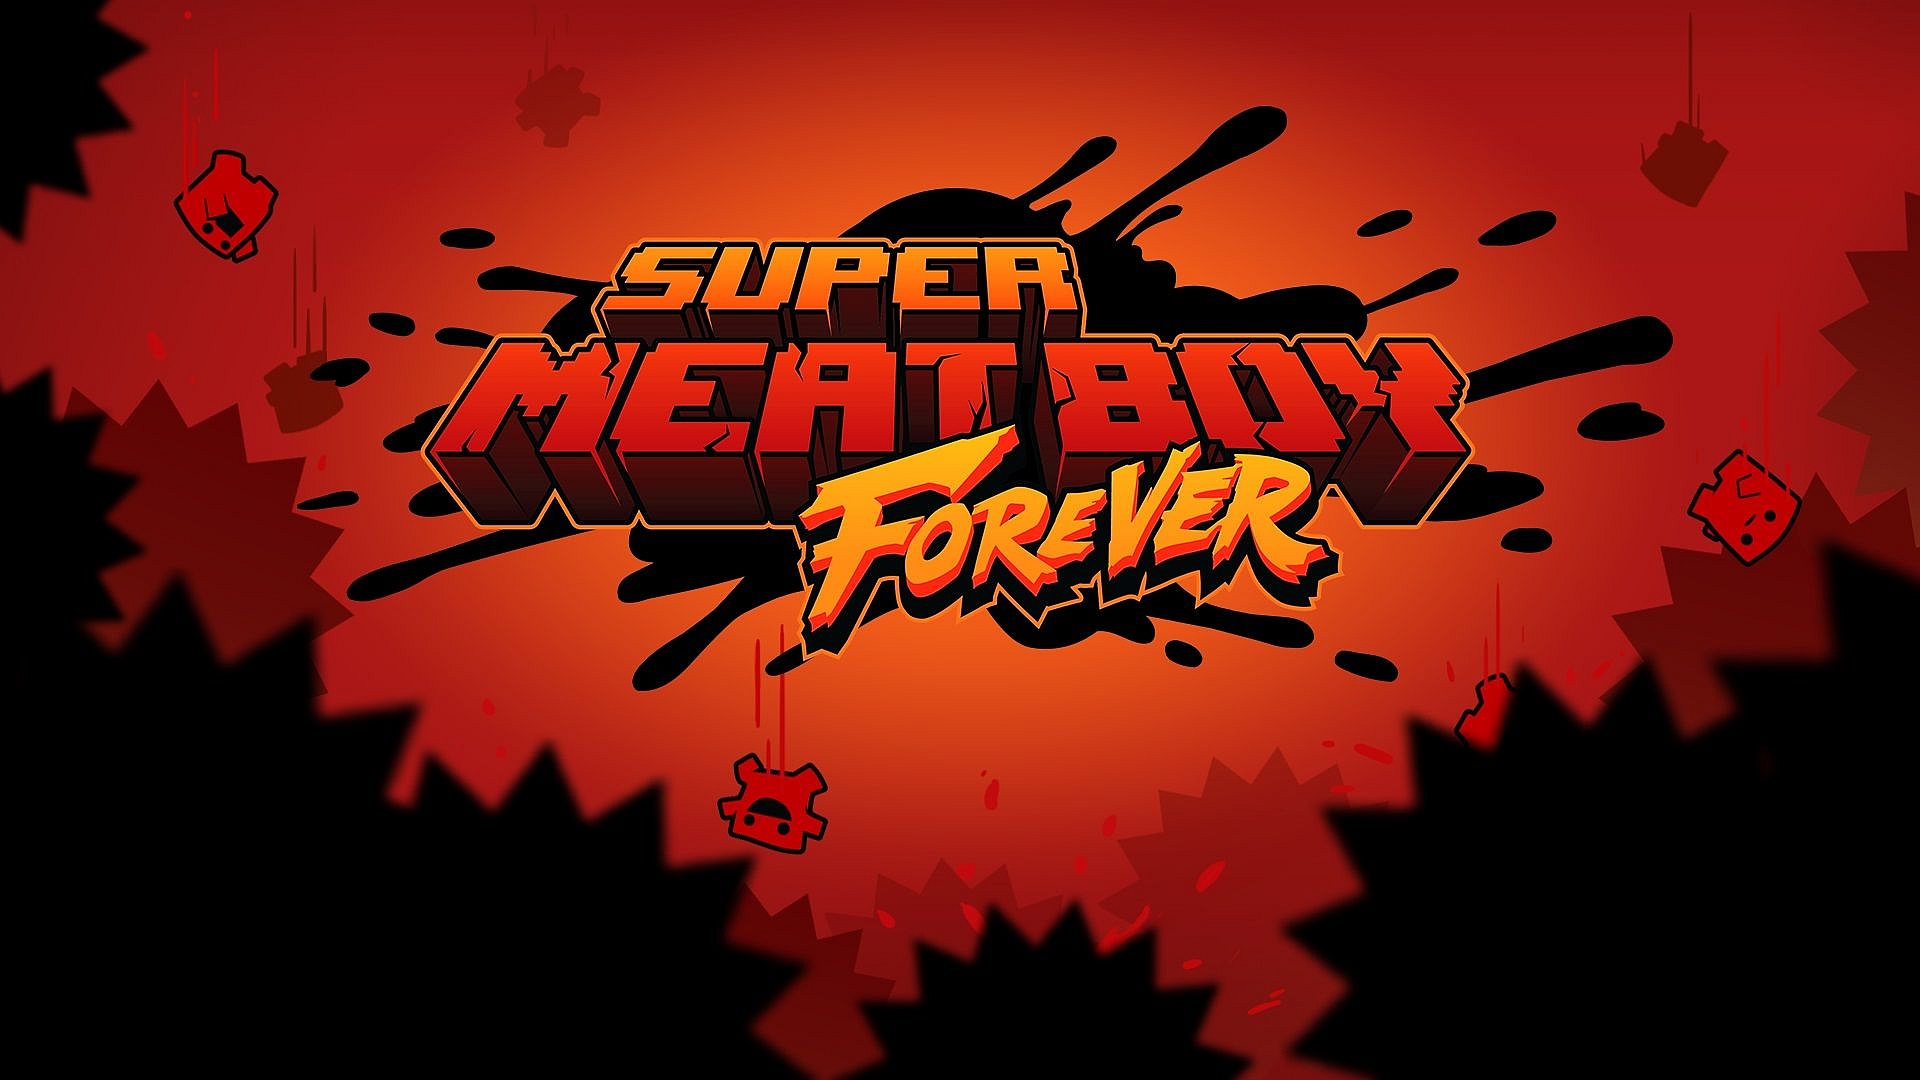 Super Meat Boy para sempre